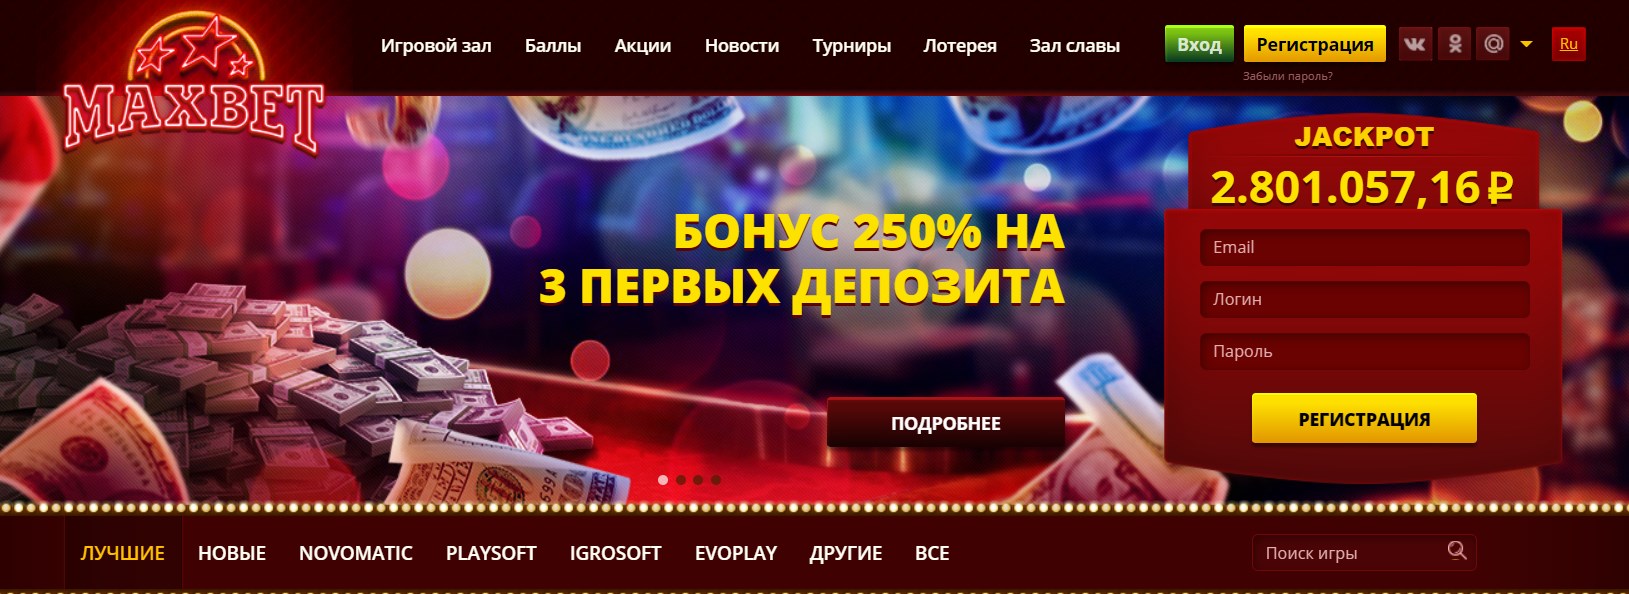 Сыграйте в популярные игровые аппараты на азартном портале Maxbet Slots